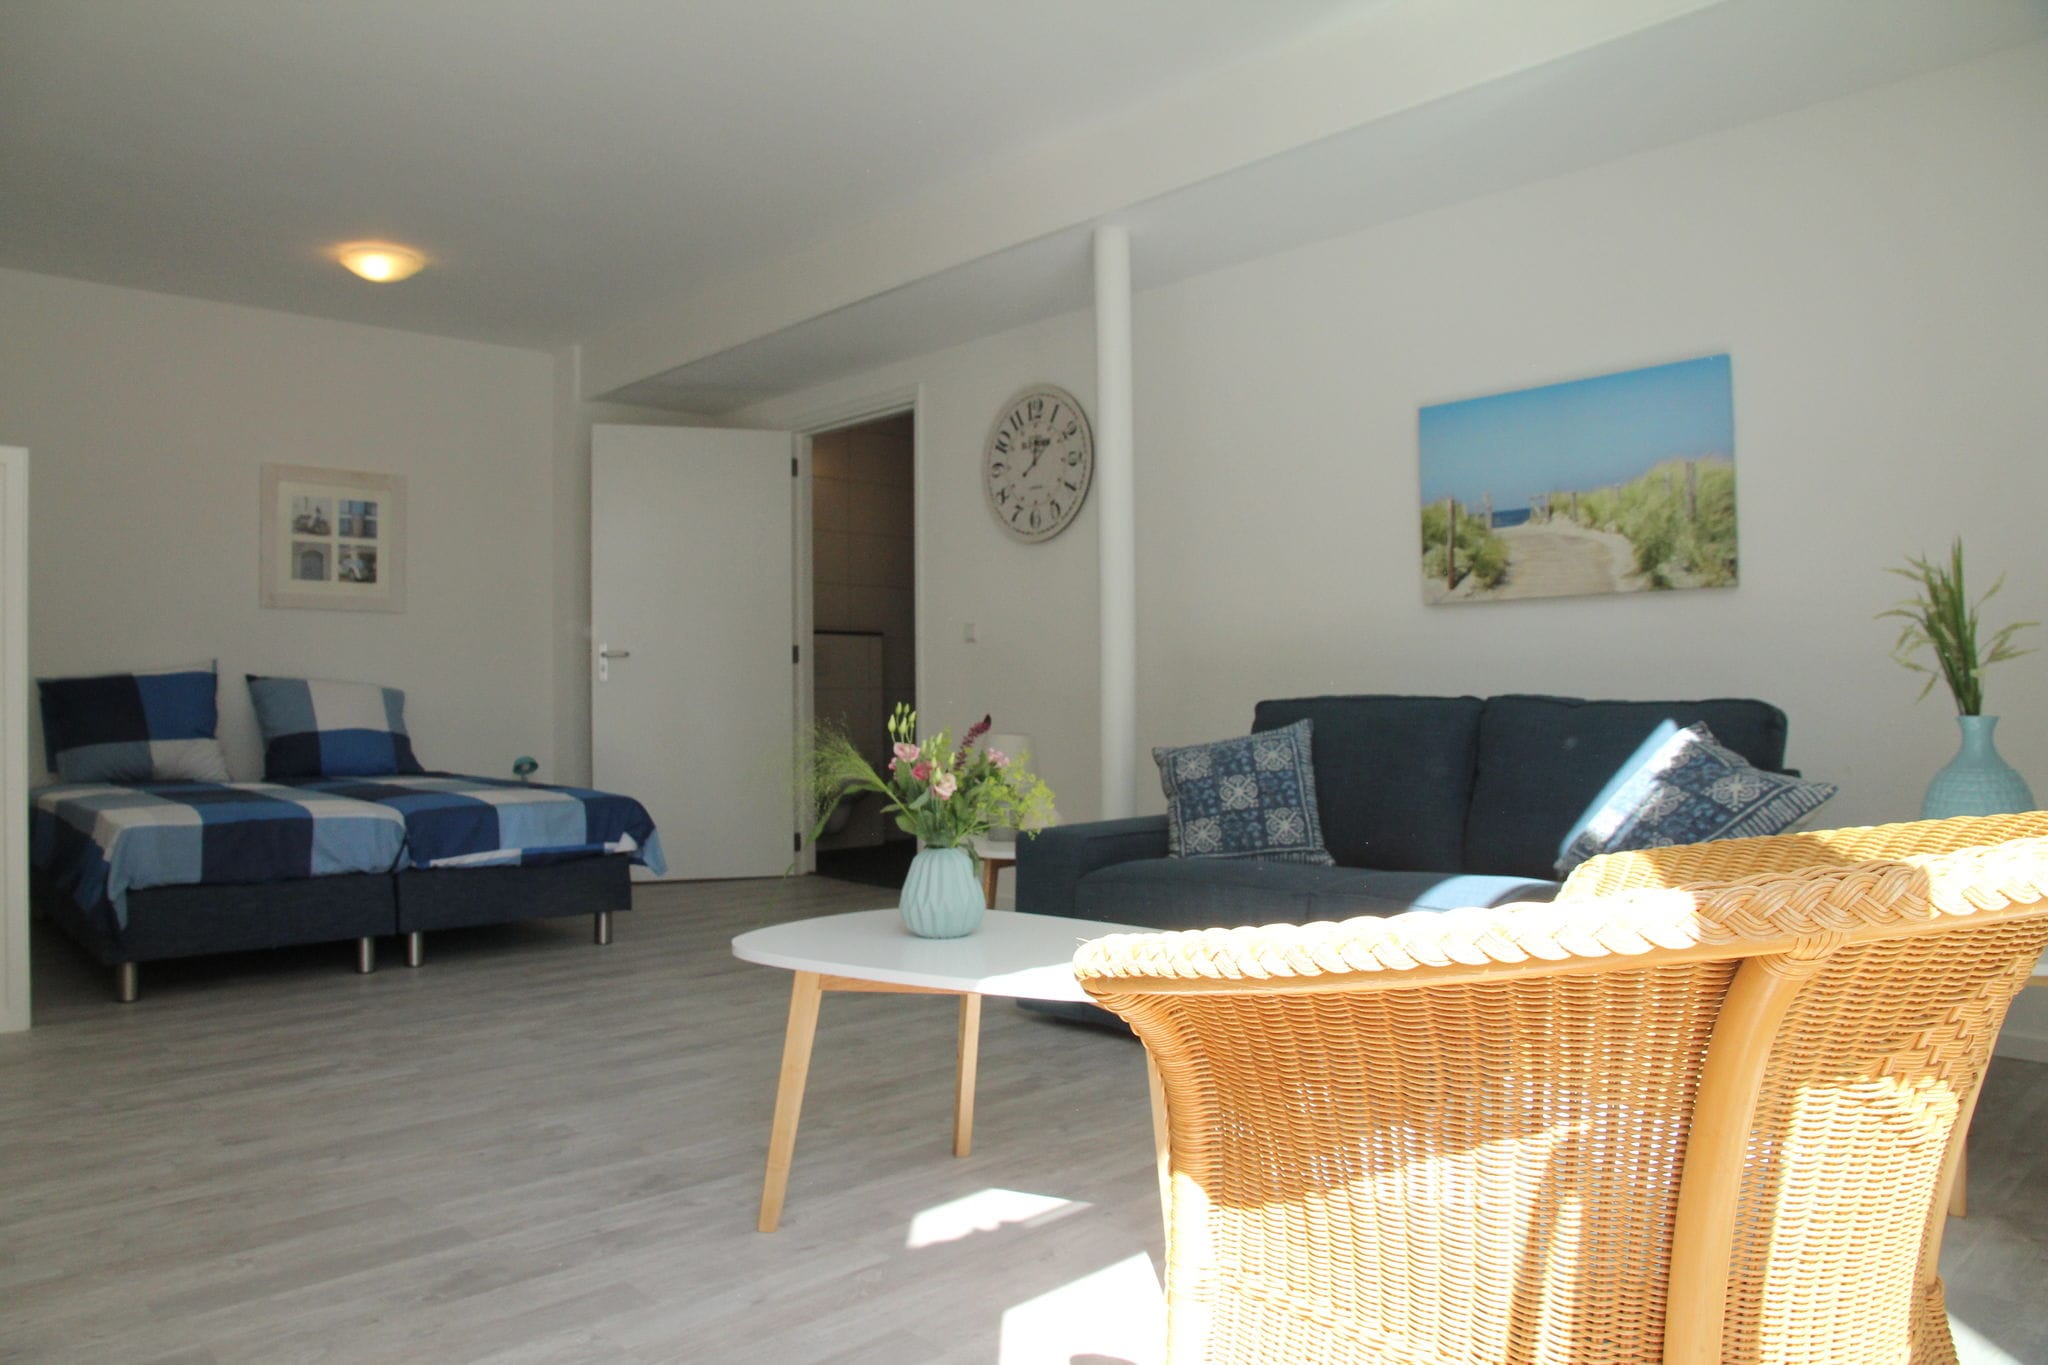 Mooi appartement in Schoorl vlakbij strand